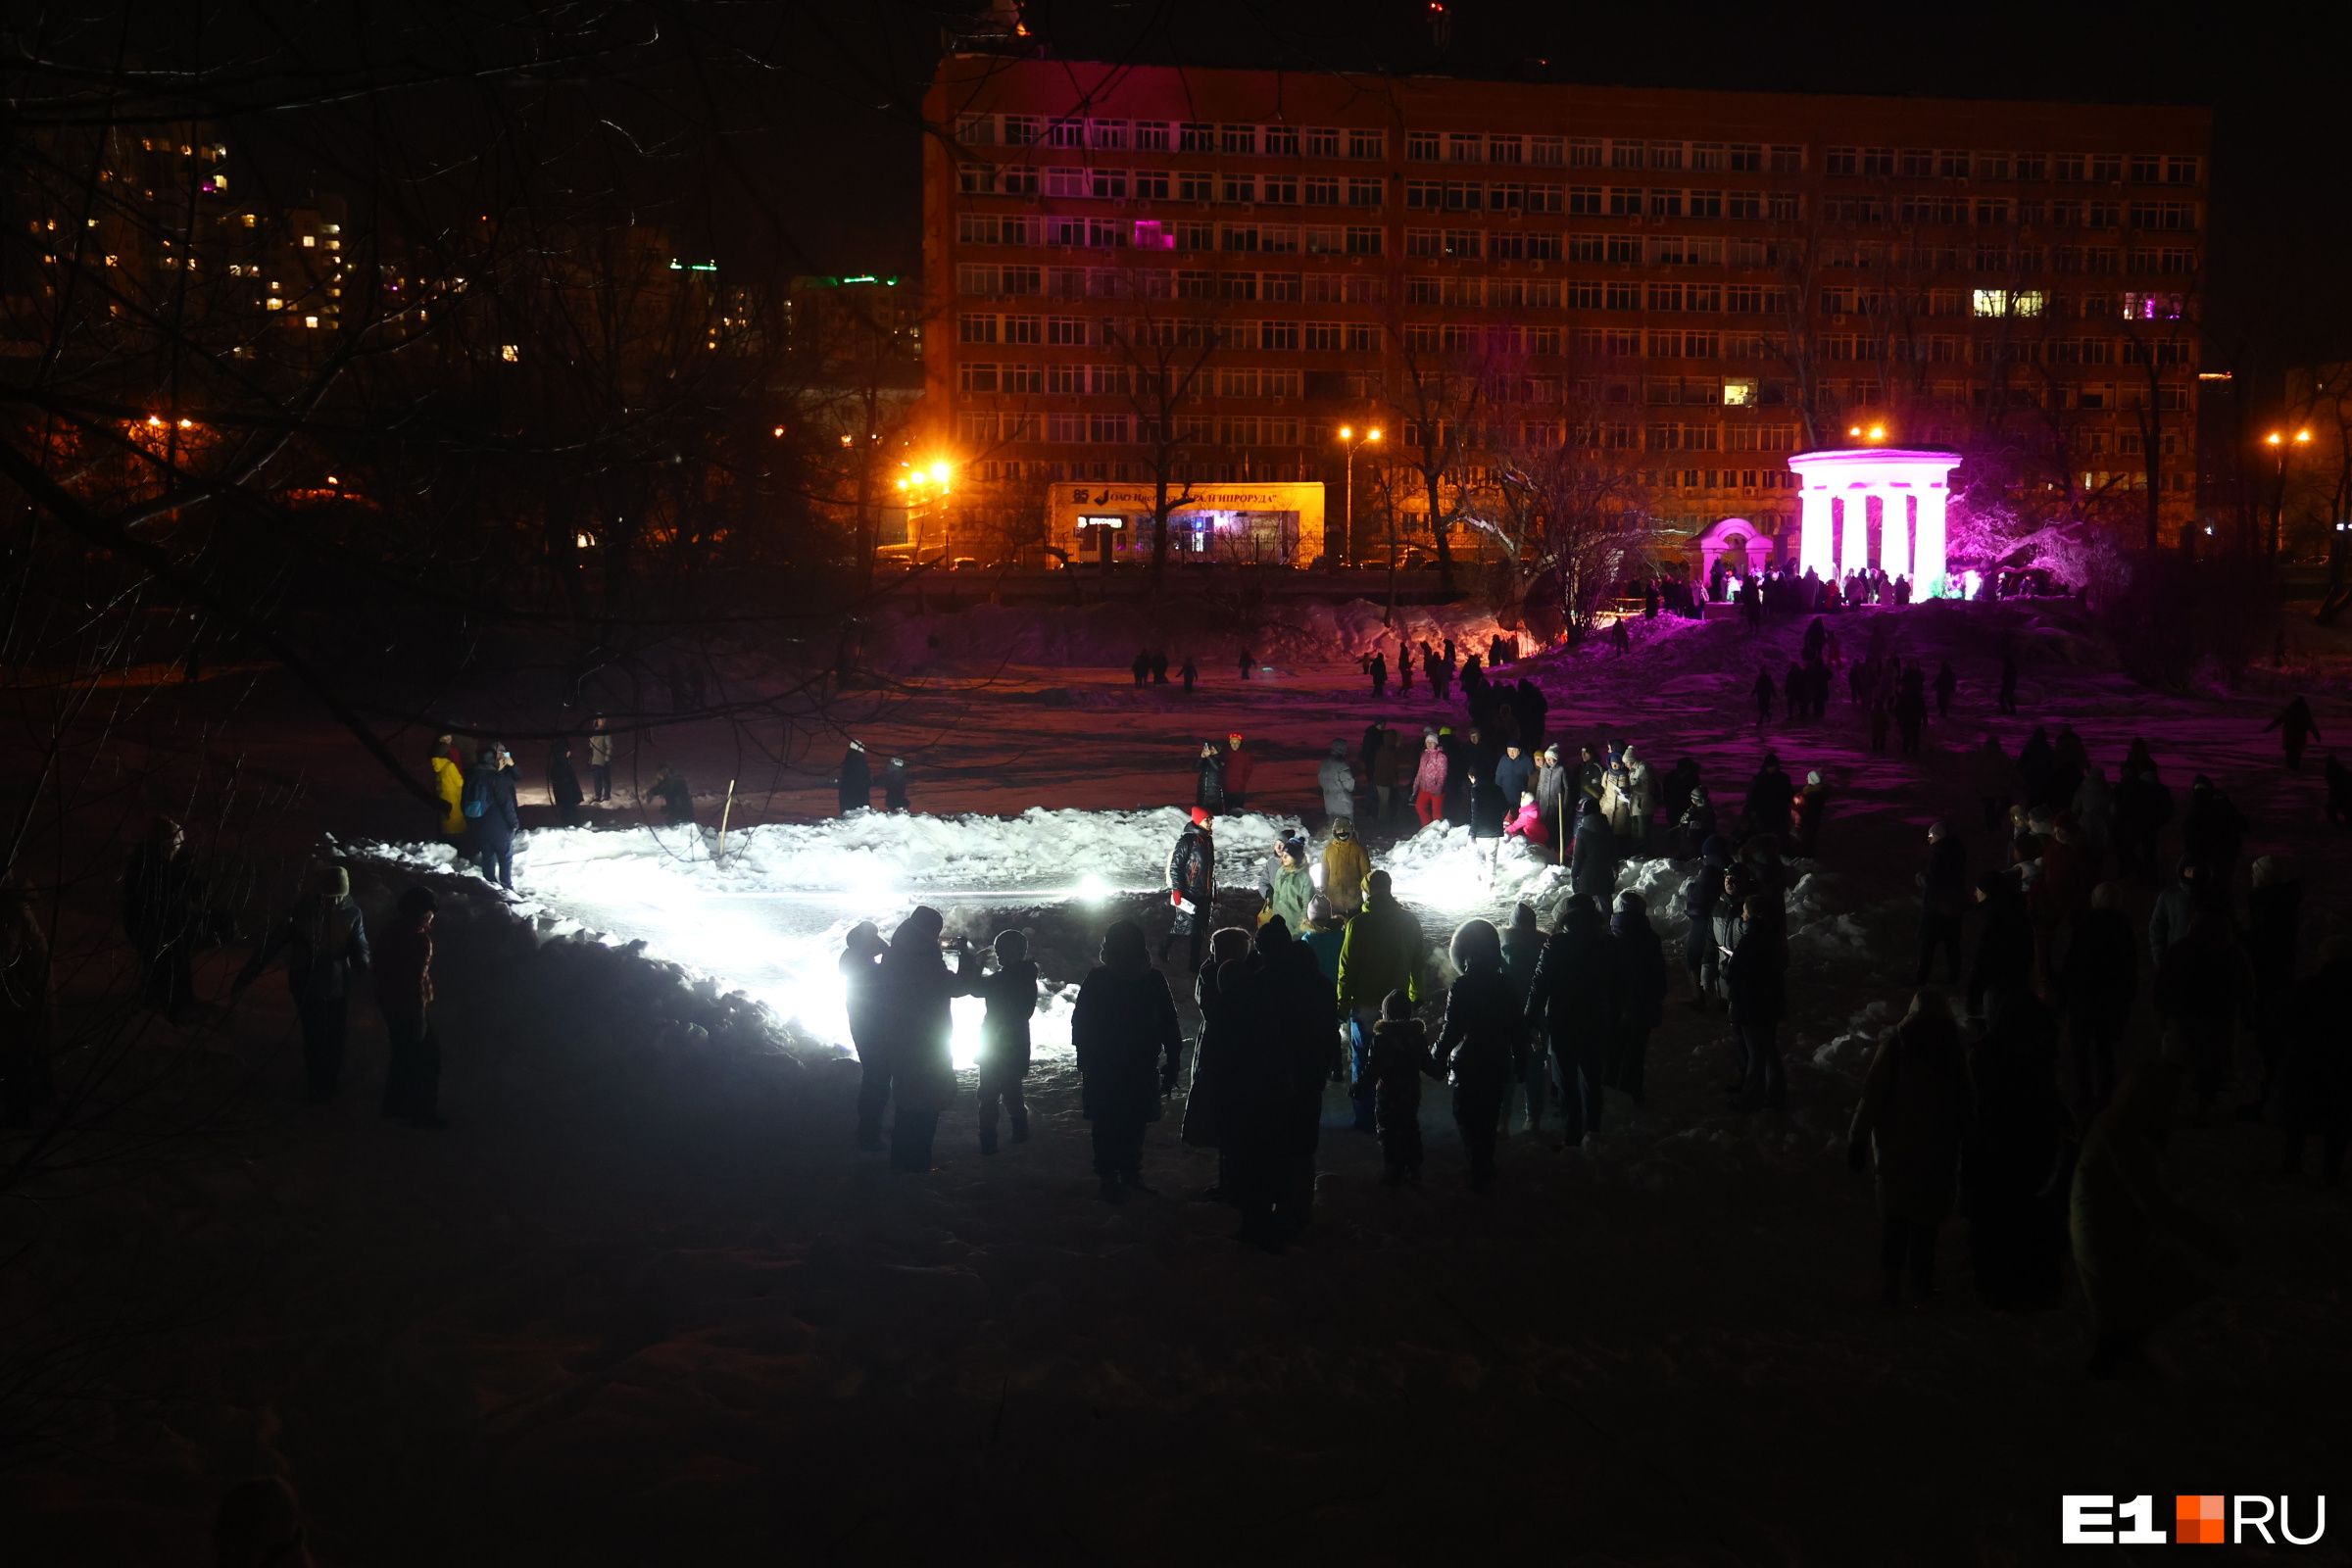 Тысячи екатеринбуржцев ринулись в парк и выстроились в очереди (несмотря на мороз!). Показываем, ради чего